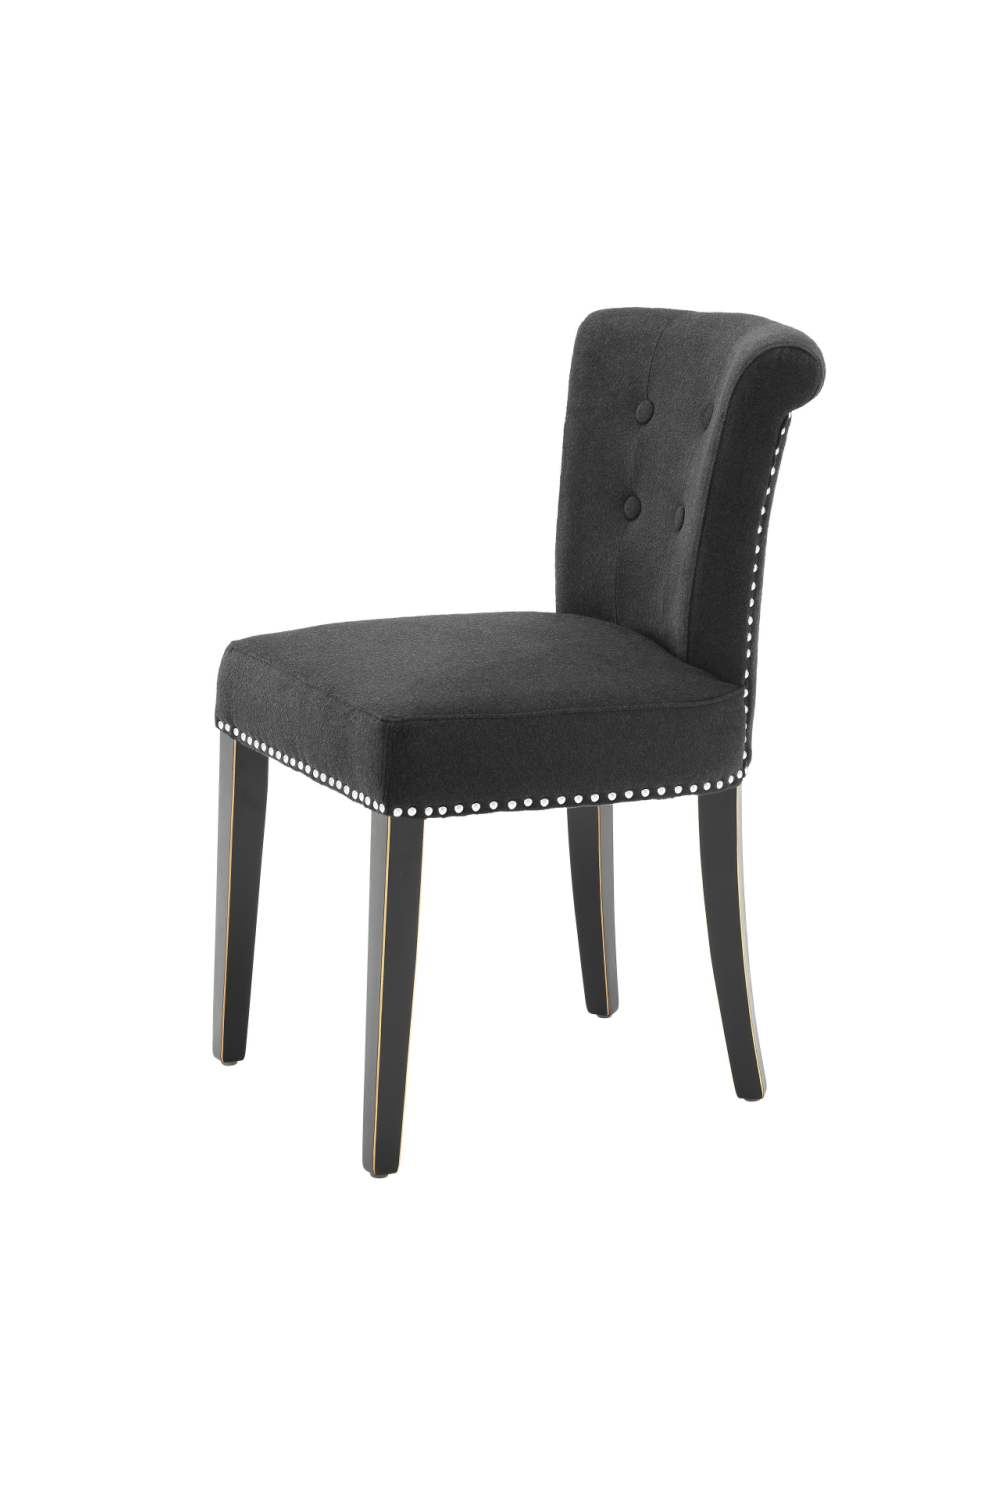 Black Cashmere Dining Chair | Eichholtz Key Largo | Oroa.com